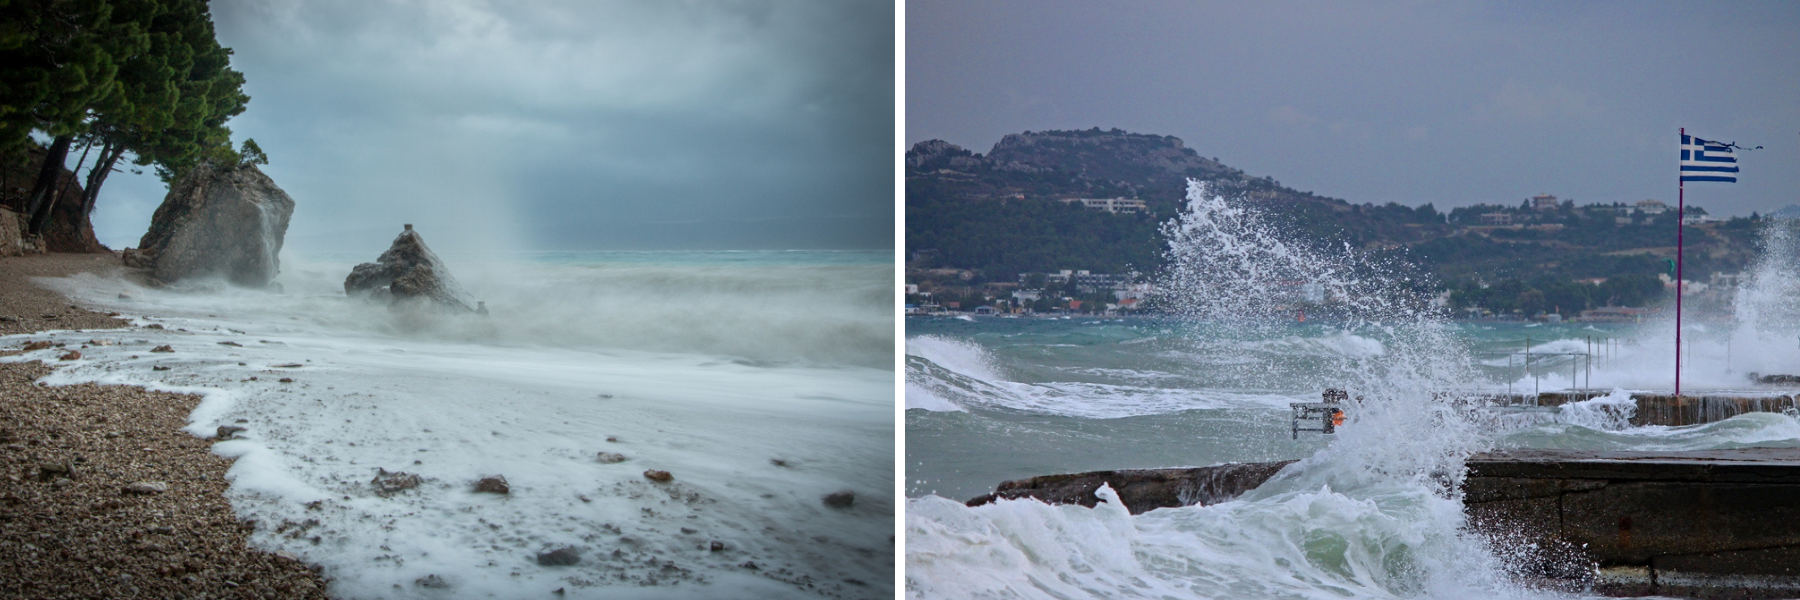 V Chorvatsku i Řecku můžete narazit na nepříjemný vítr a počasí.